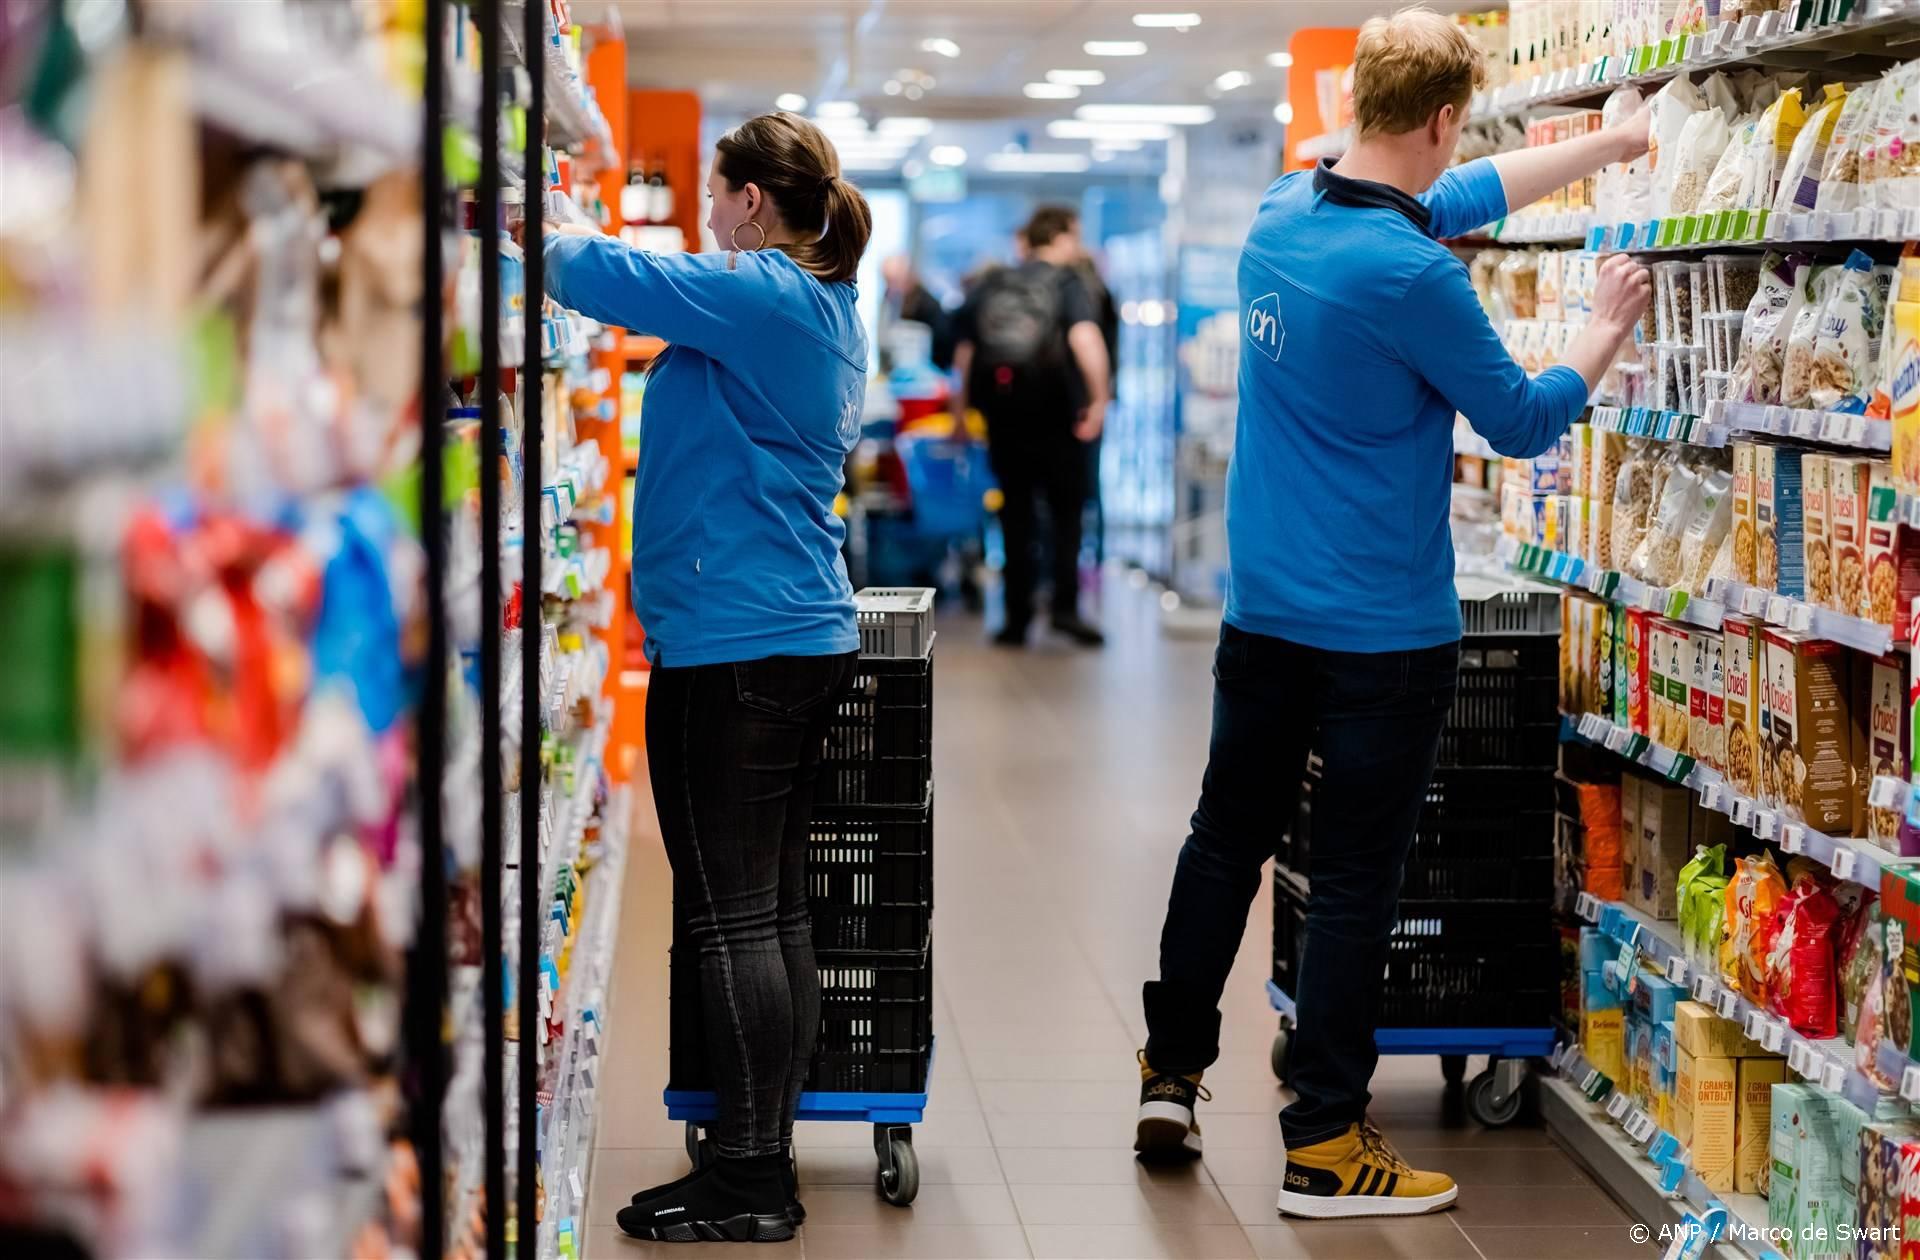 DELFT - Jonge medewerkers van een Albert Heijn-filiaal in Delft aan het werk. Door de coronacrisis moet de supermarkt puzzelen om de roosters rond te krijgen en de schappen te vullen. ANP MARCO DE SWART